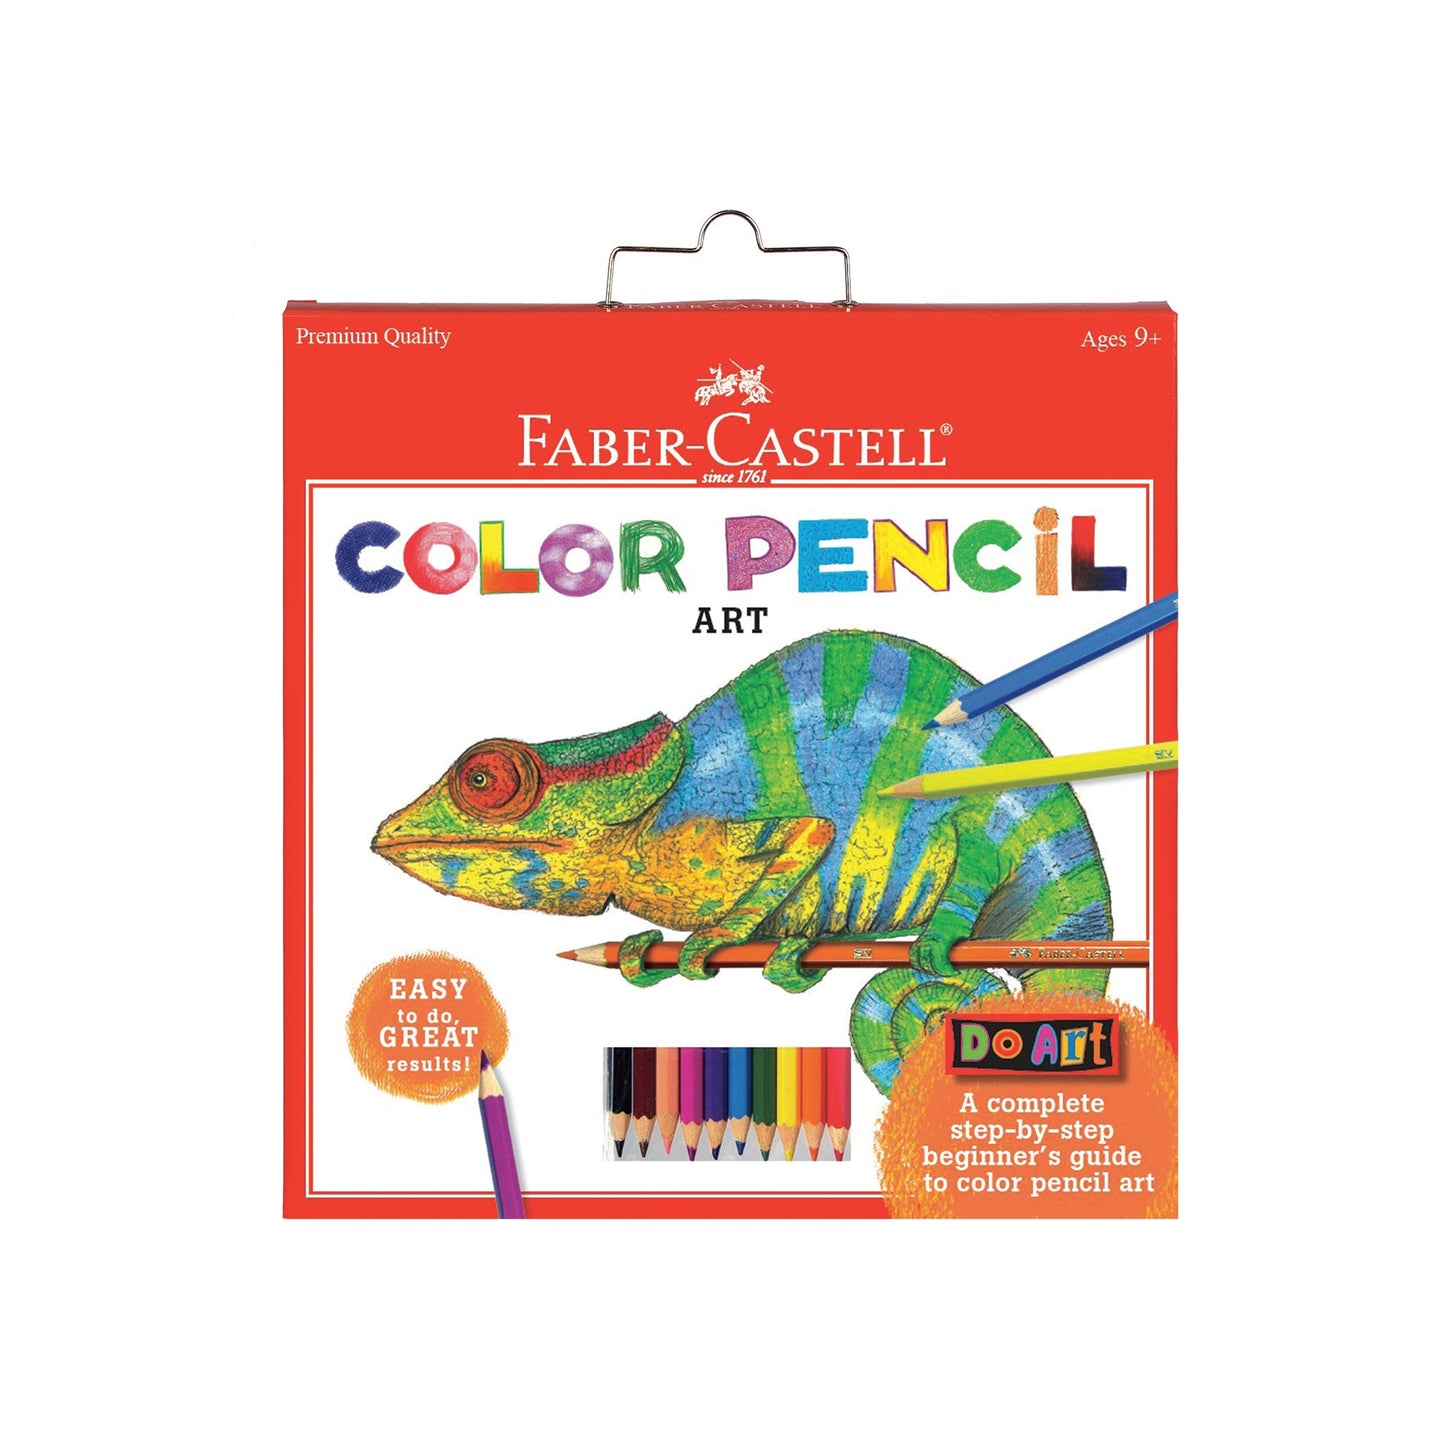 Do Art Color Pencil Art Kit